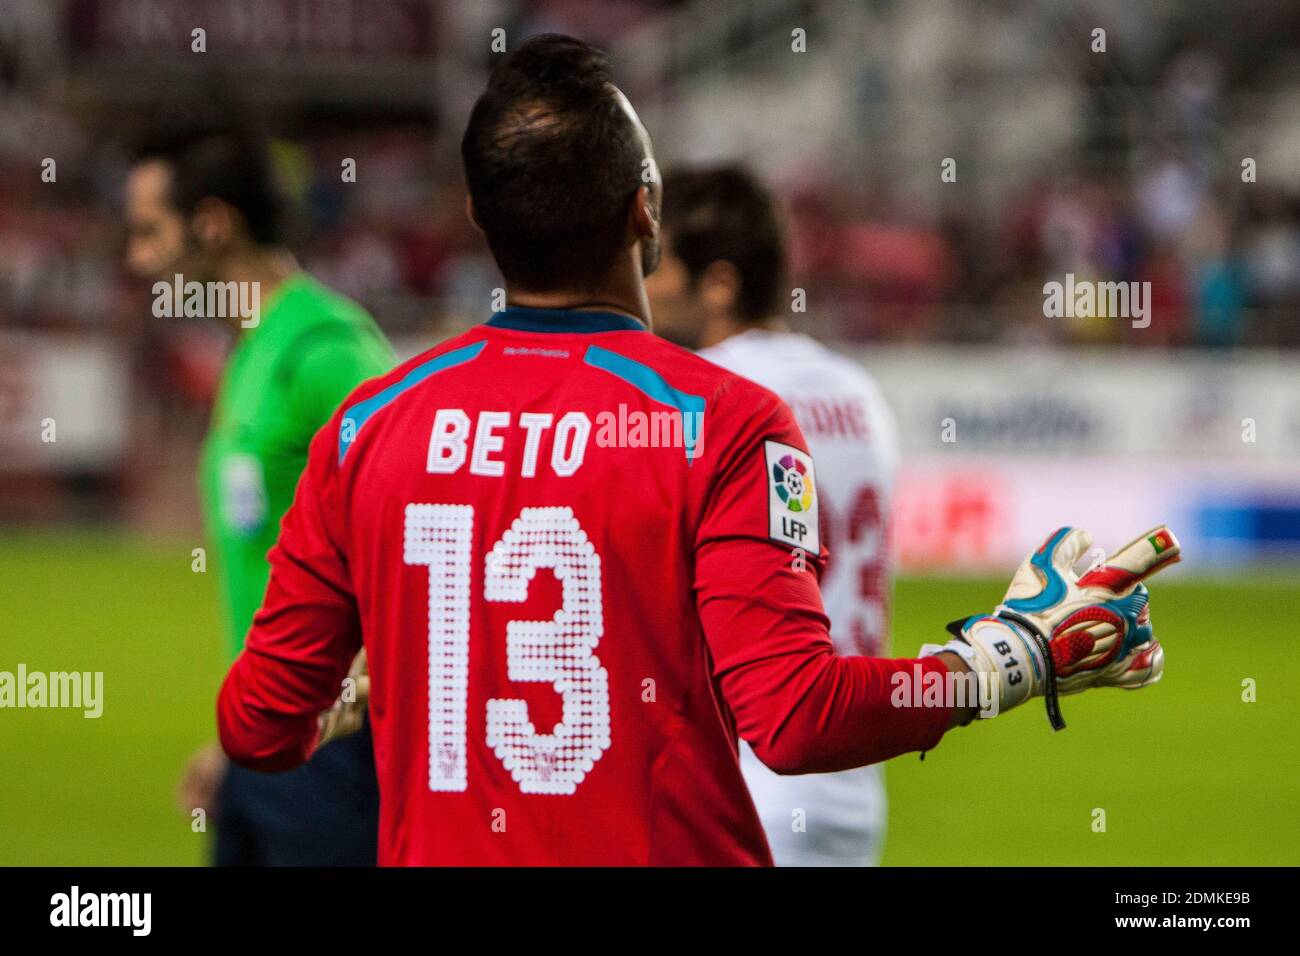 Beto, gardien de but de Sevilla FC, pendant le match de la Liga BBVA entre Sevilla FC et Villarreal au stade Ramon Sanchez Pizjuan le 26 octobre 2014 à Séville, Espagne Banque D'Images